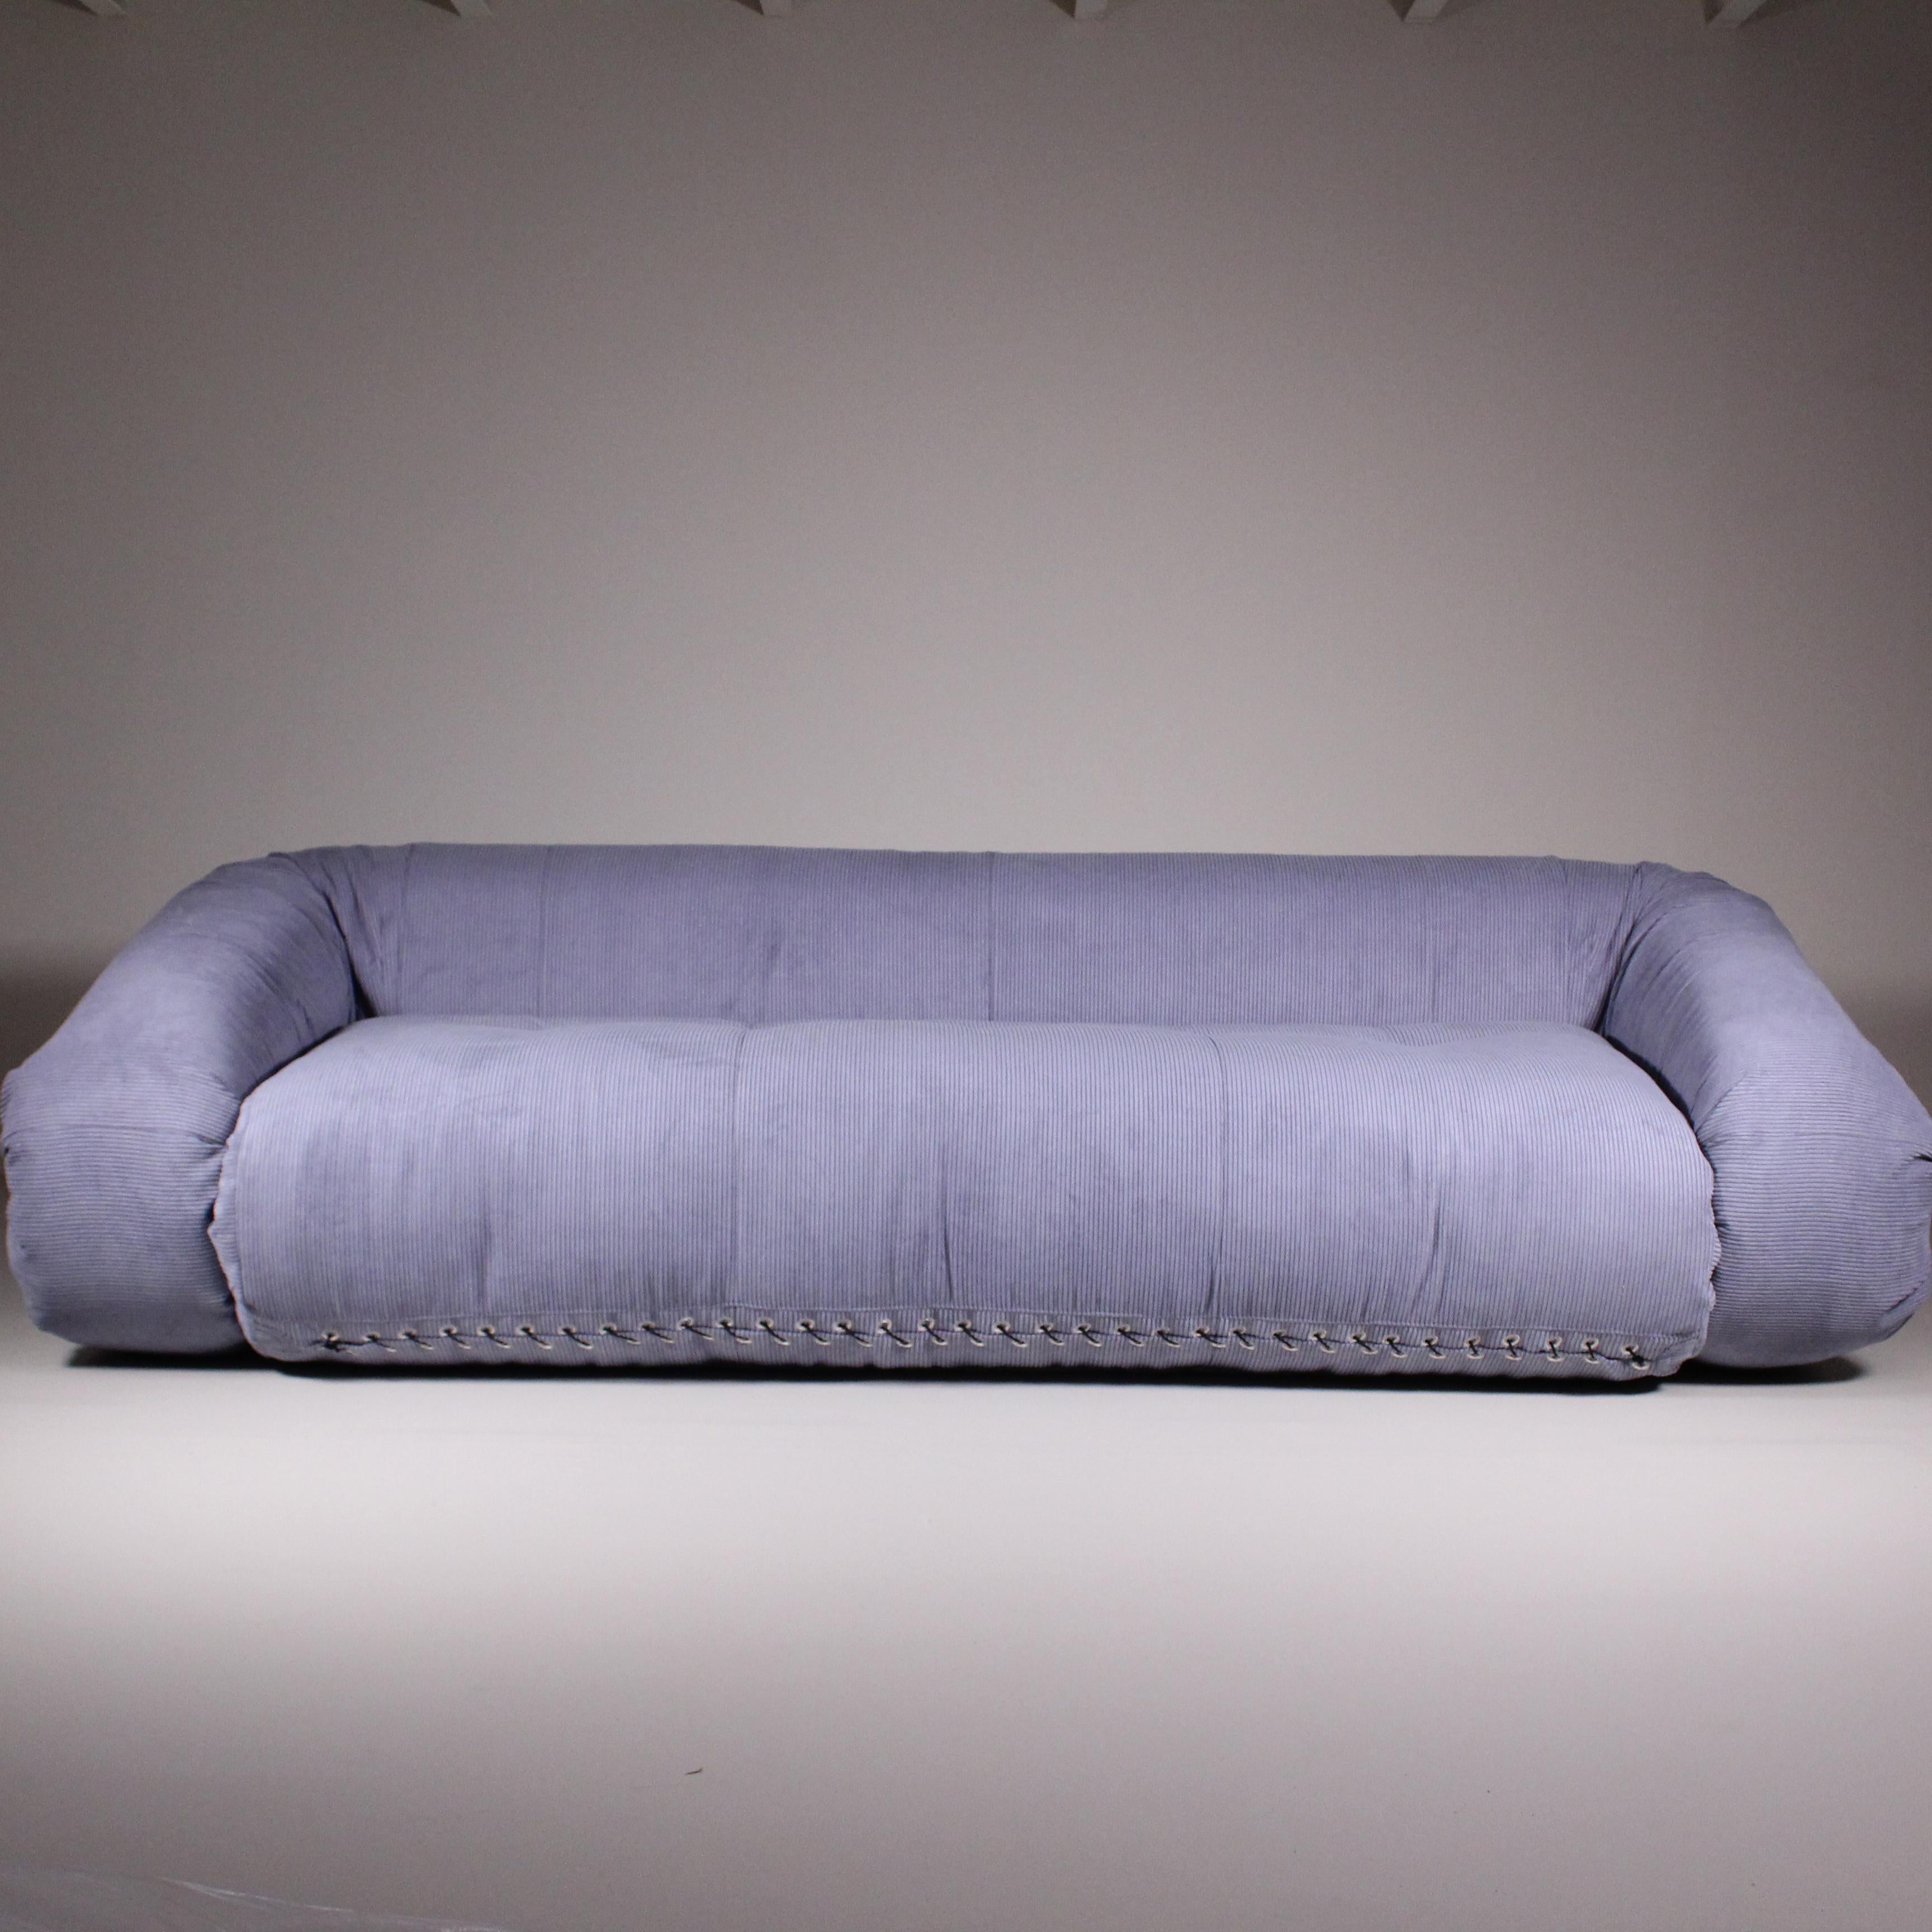 Das Anfibio-Sofa, das Alessandro Becchi um 1971 für Giovannetti entwarf, ist eine Design-Ikone, die das innovative Wesen und die Vielseitigkeit der Möbel der 1970er Jahre verkörpert. Dieses außergewöhnliche Möbelstück zeichnet sich durch seine